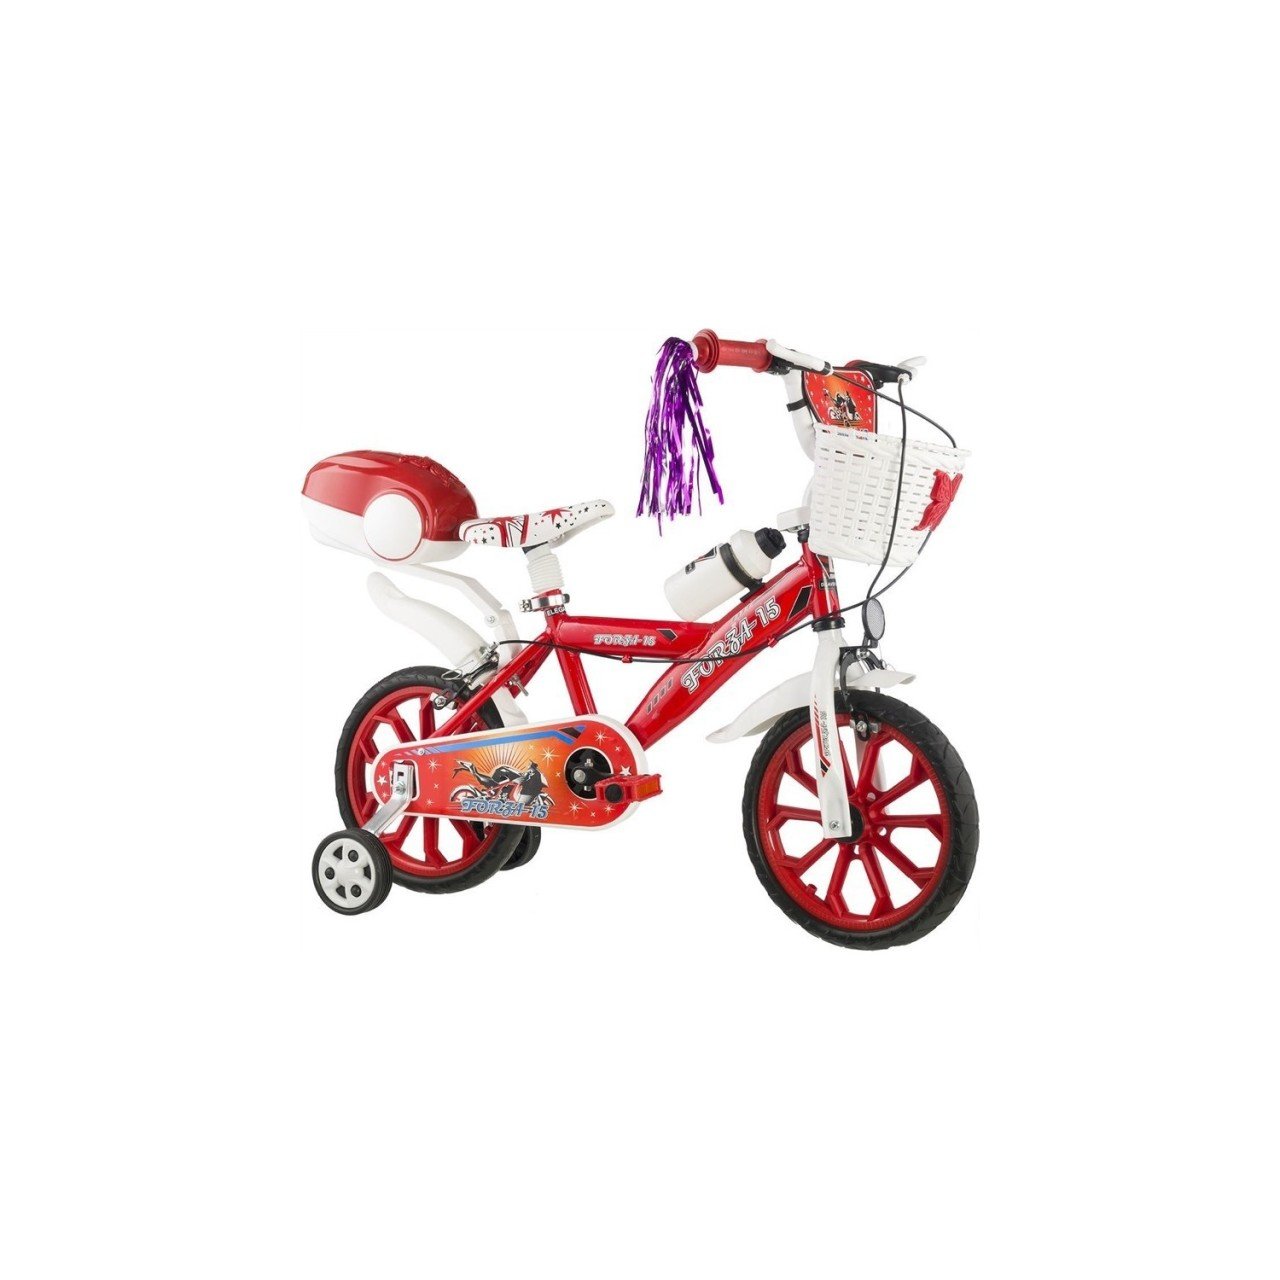 Dilaver Forza 15 Jant 3-7 Yaş Çocuk Bisikleti - Kırmızı